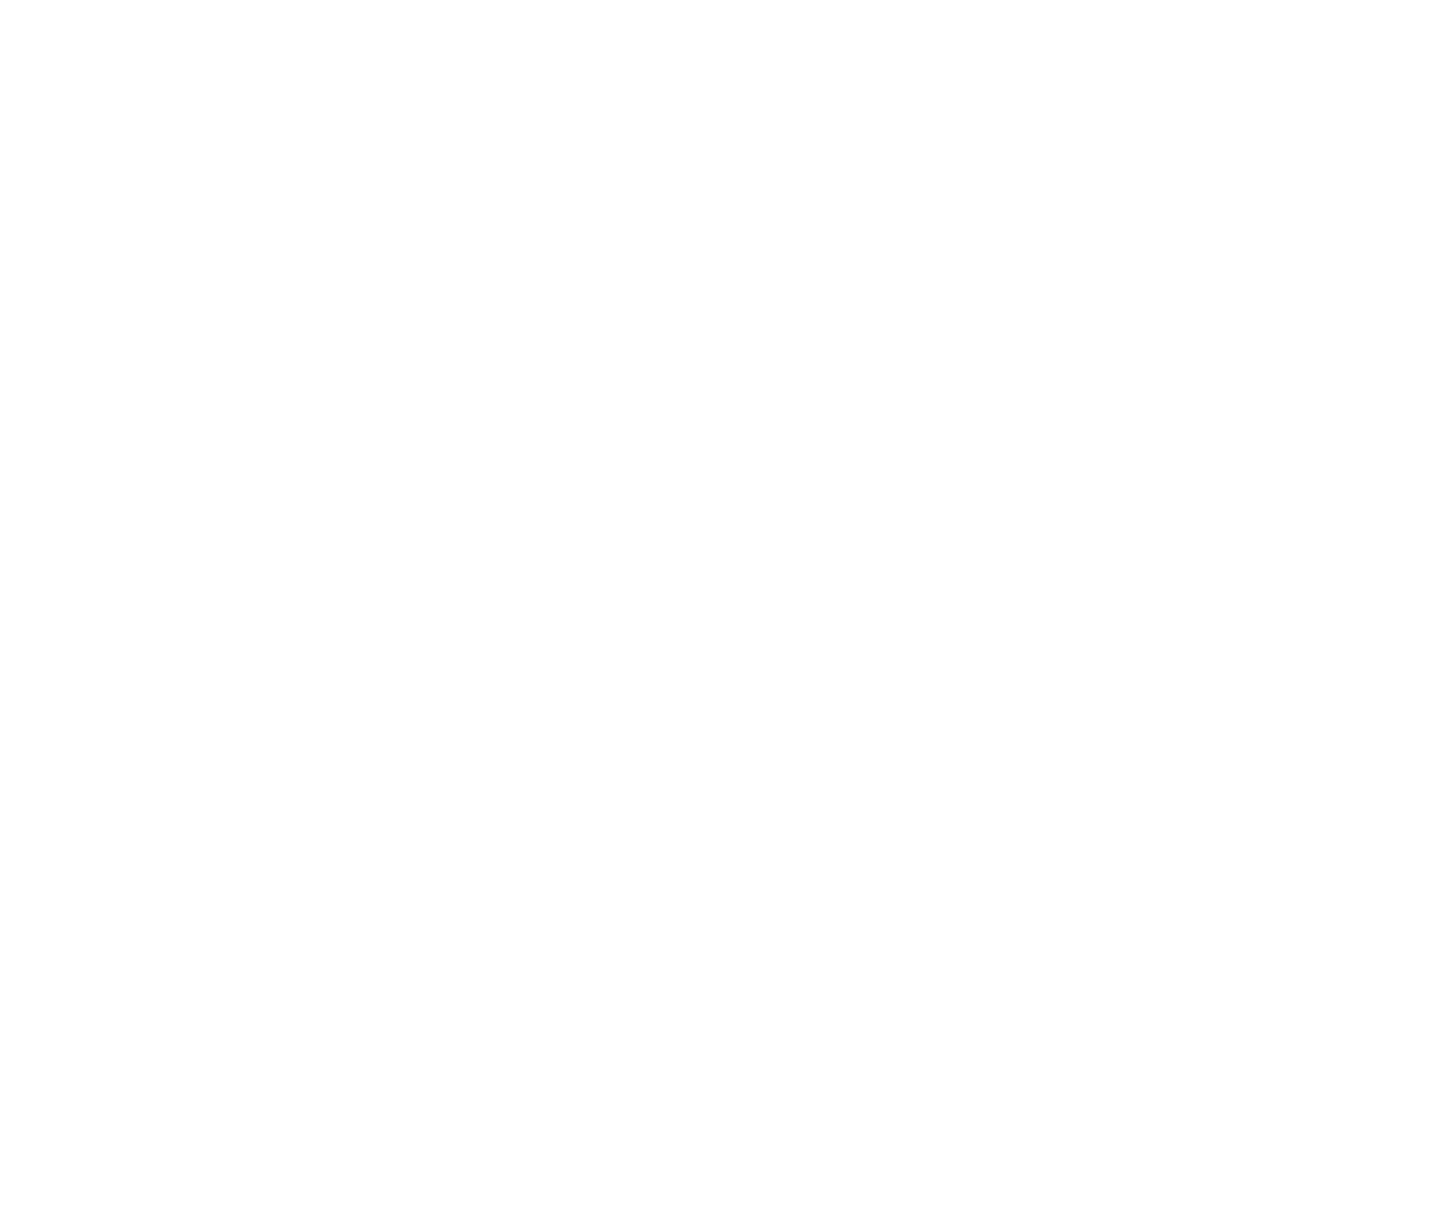 REVEL hypno